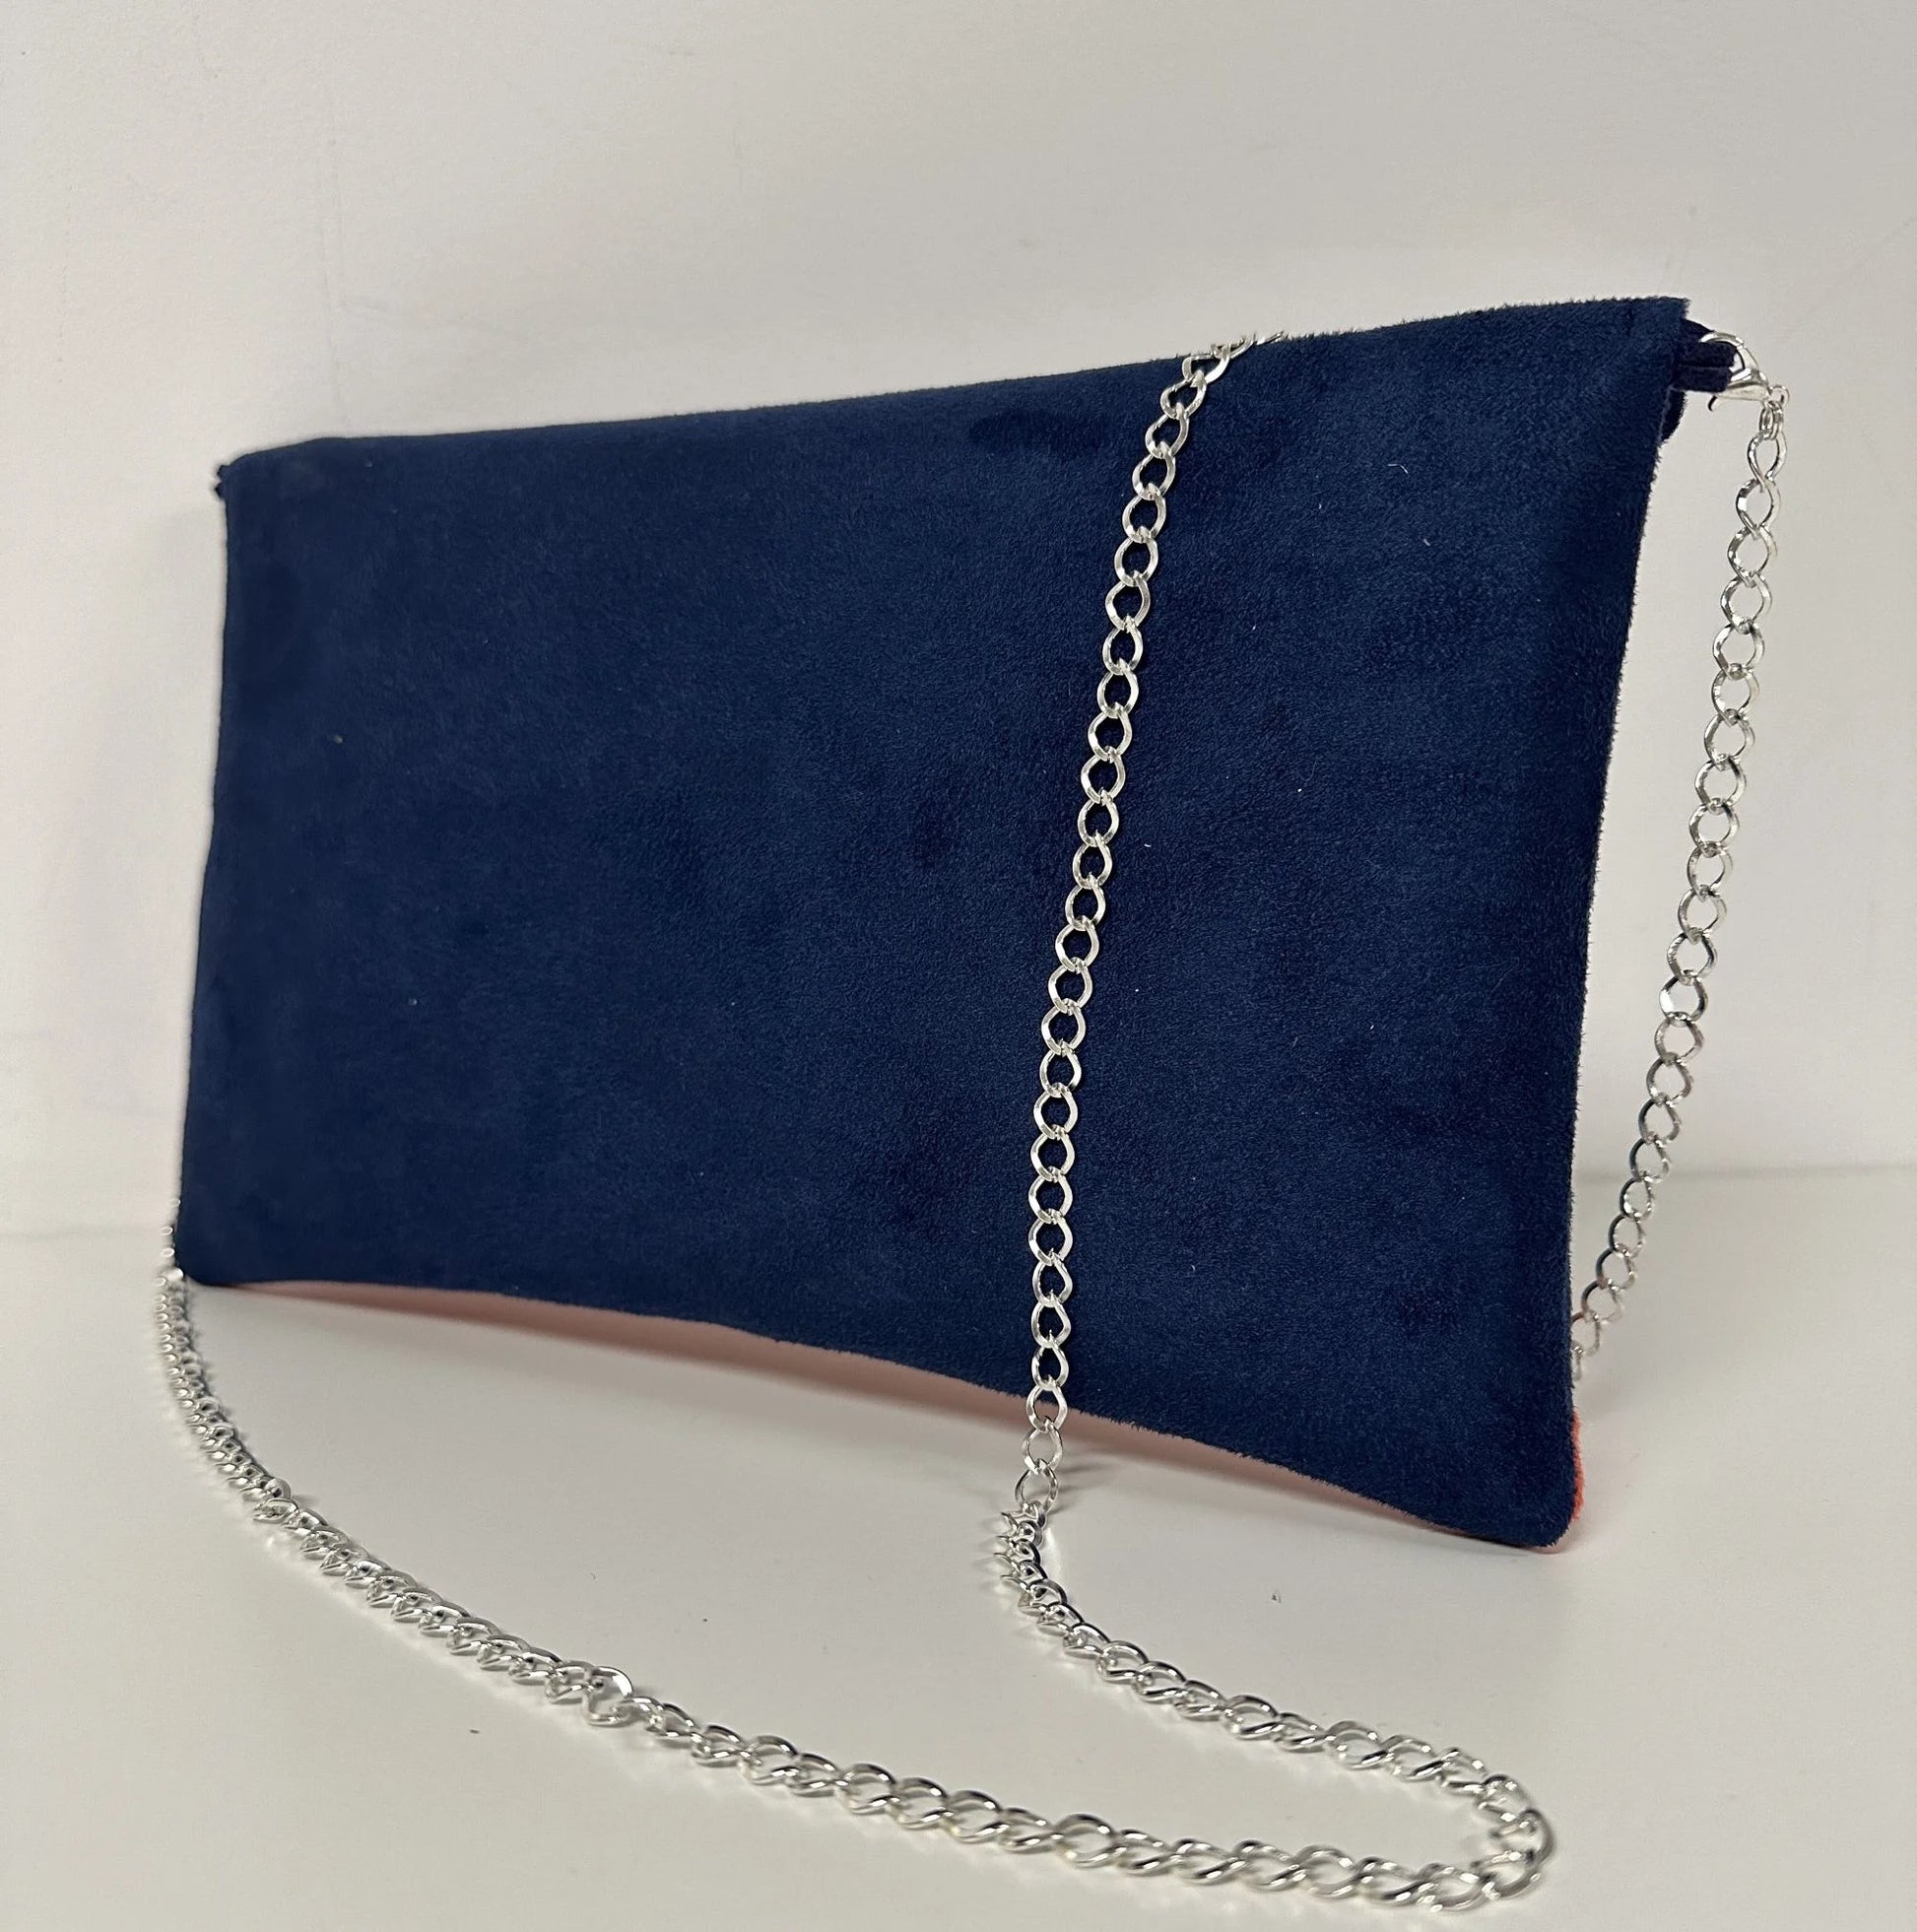 Le Le sac pochette Isa à paillettes bleu marine et argentées, vue de dos.